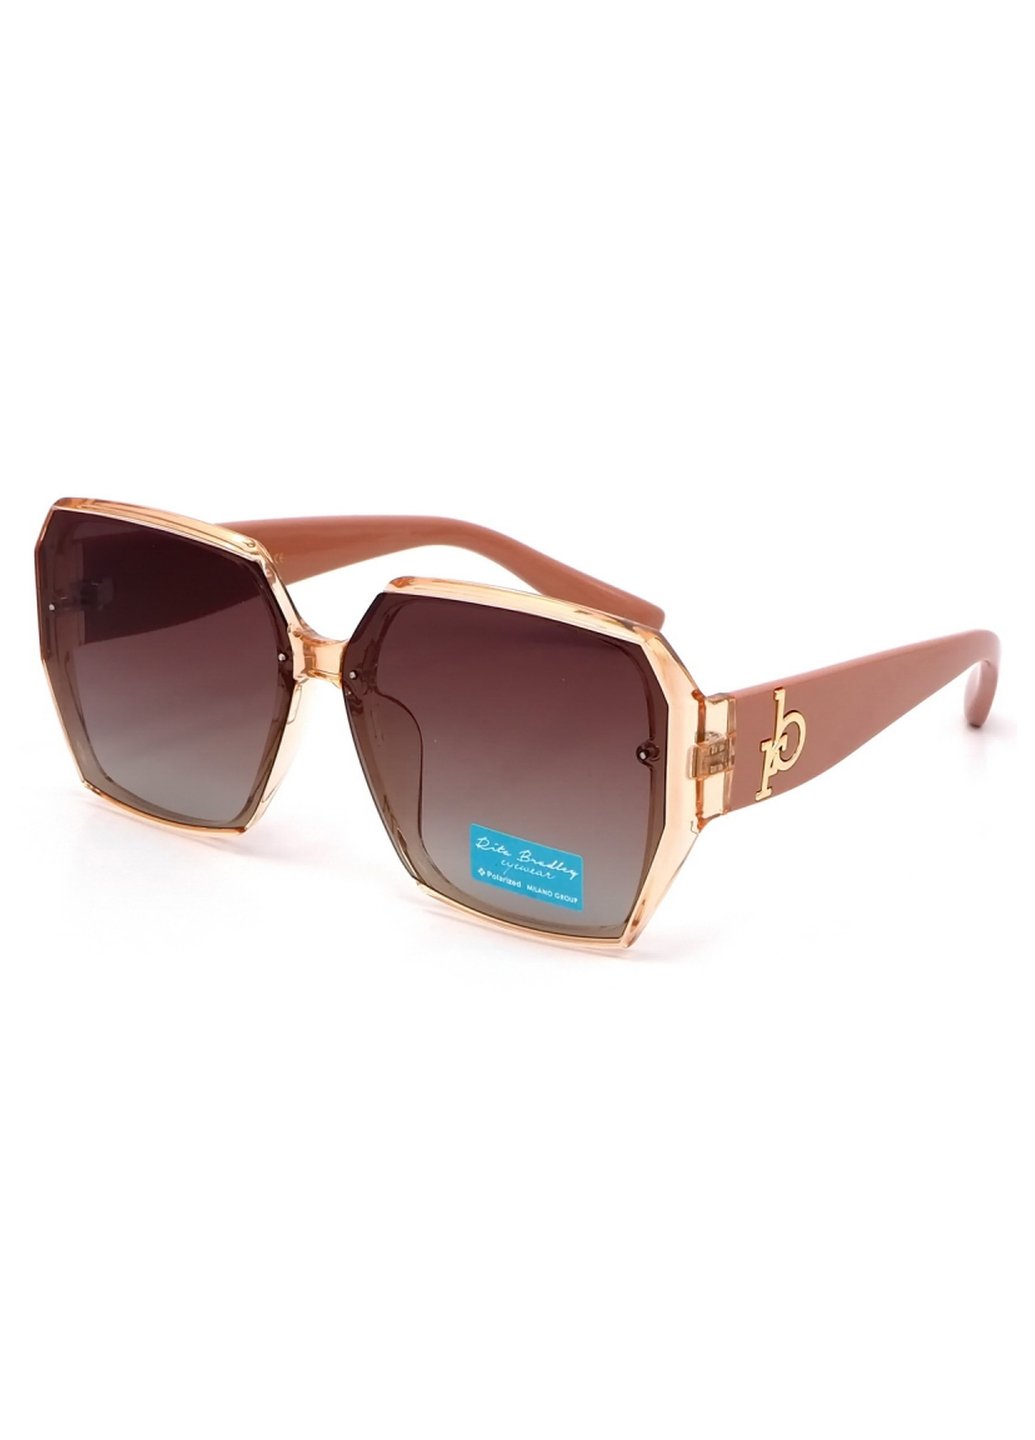 Купить Женские солнцезащитные очки Rita Bradley с поляризацией RB722 112036 в интернет-магазине